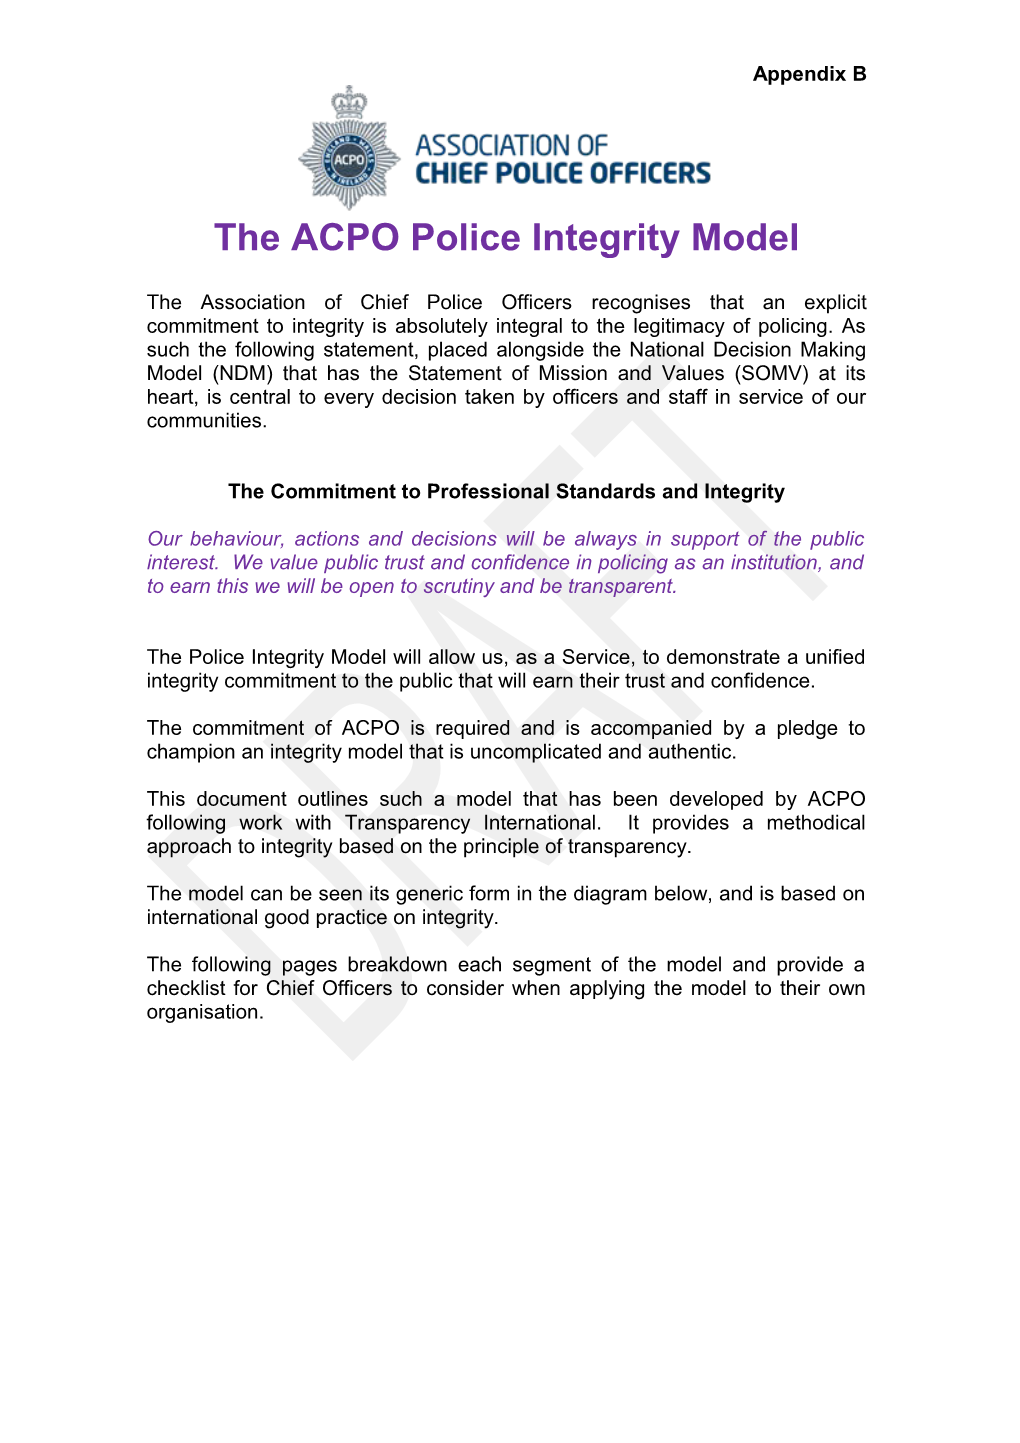 The ACPO Police Integrity Model